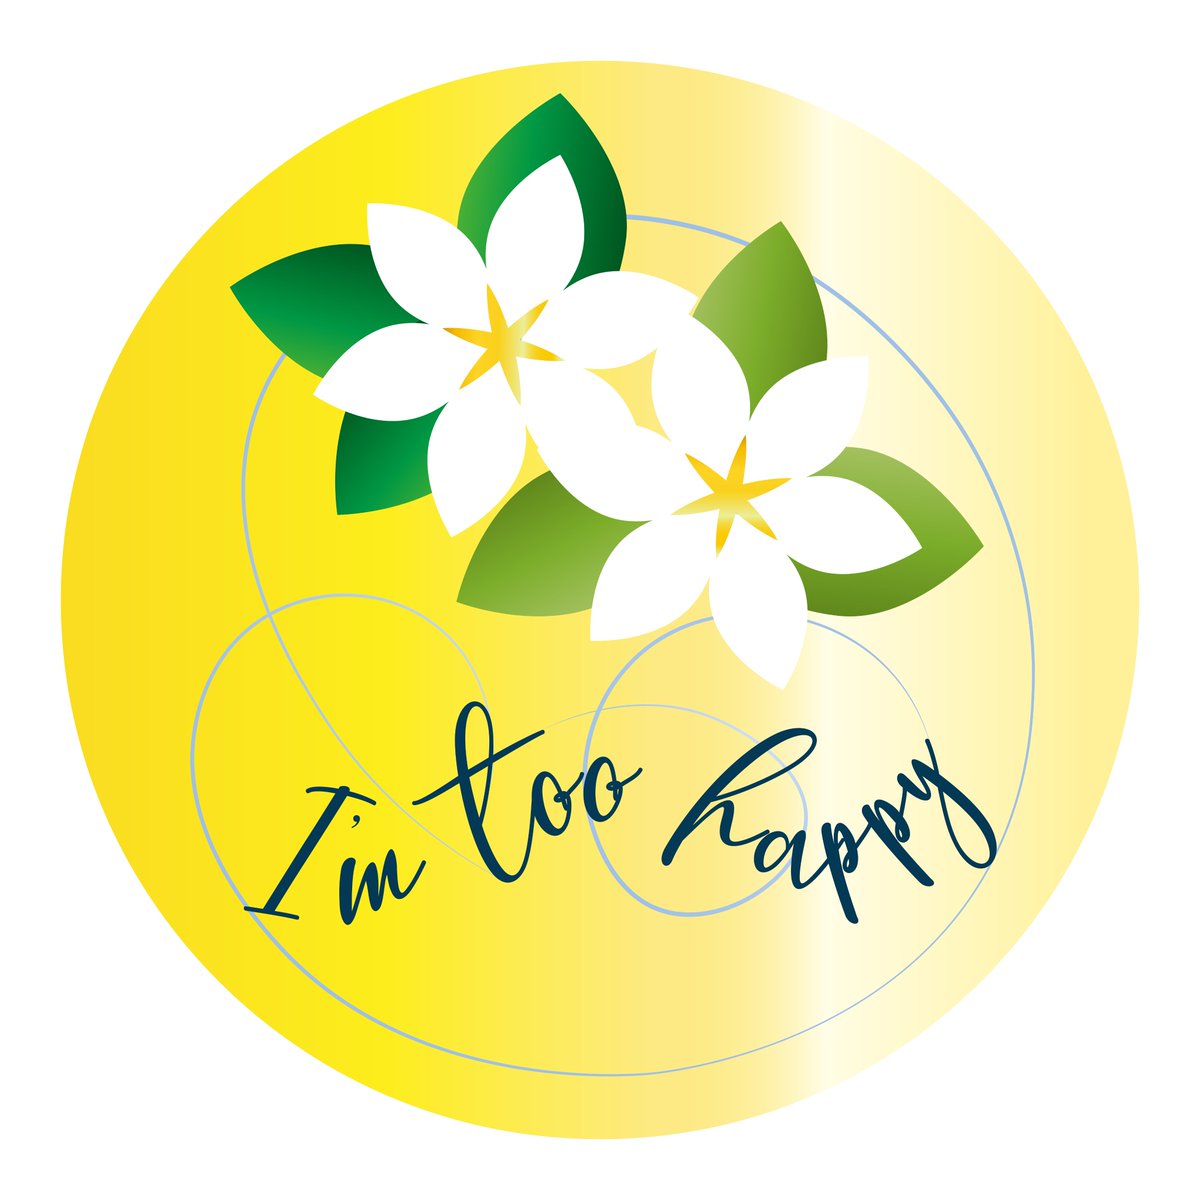 '毎日logo'  Day36
テーマ｜5月6日 Gardenia
制作ツール｜Illustrator
制作時間｜1h
制作の工夫などnoteにまとめています。
note.com/tama_mono/n/n5…
ぜひ合わせて読んでいただけたら嬉しいです💖
※画像転載は固くご遠慮ください。
#毎日logo #チャレンジ #ロゴ